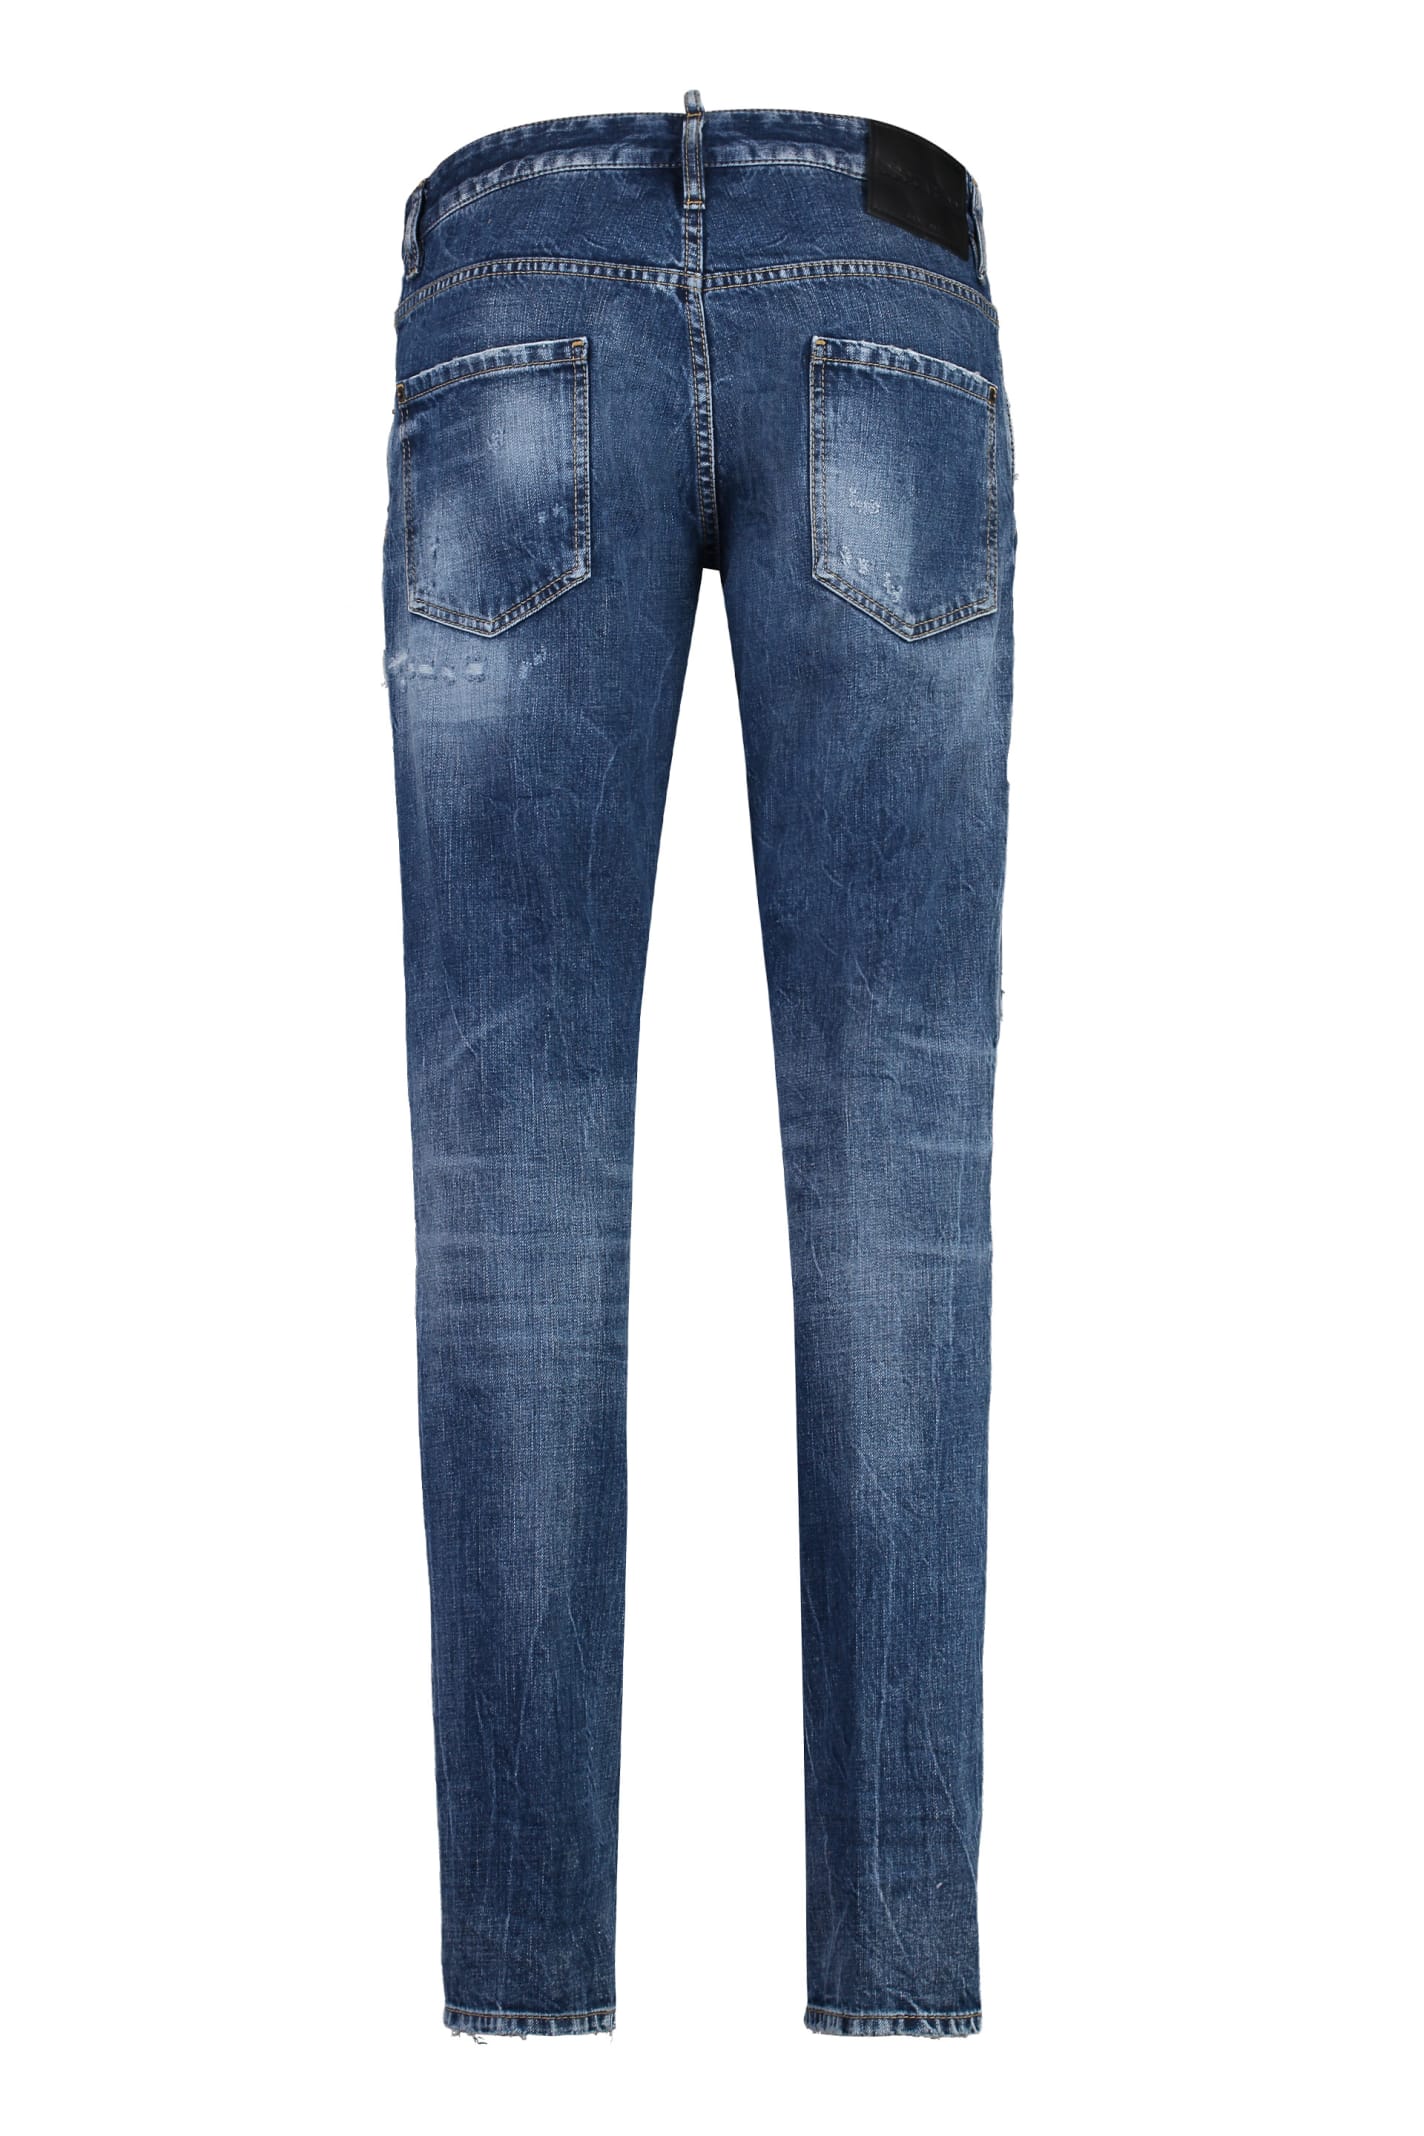 Shop Dsquared2 Cool Guy 5-pocket Jeans